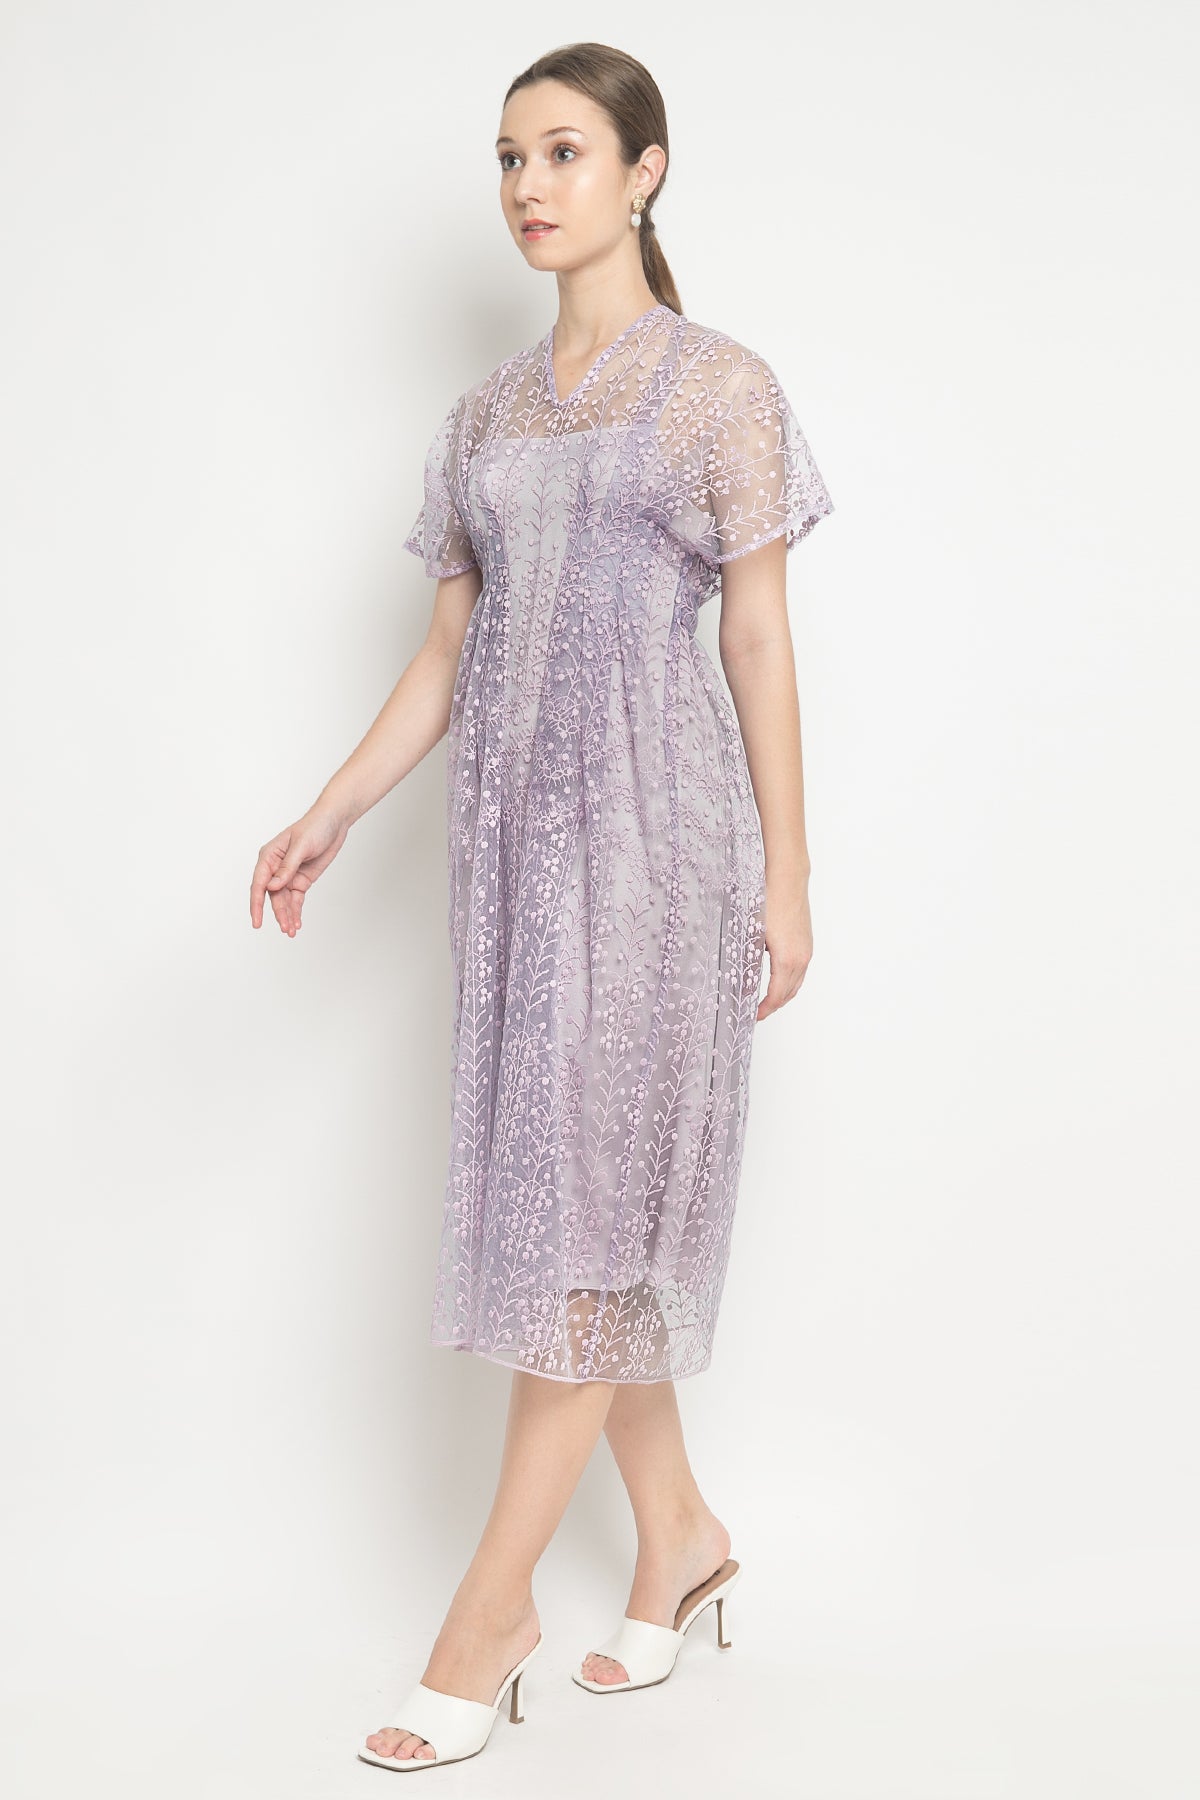 Greeta Dress in Lilac